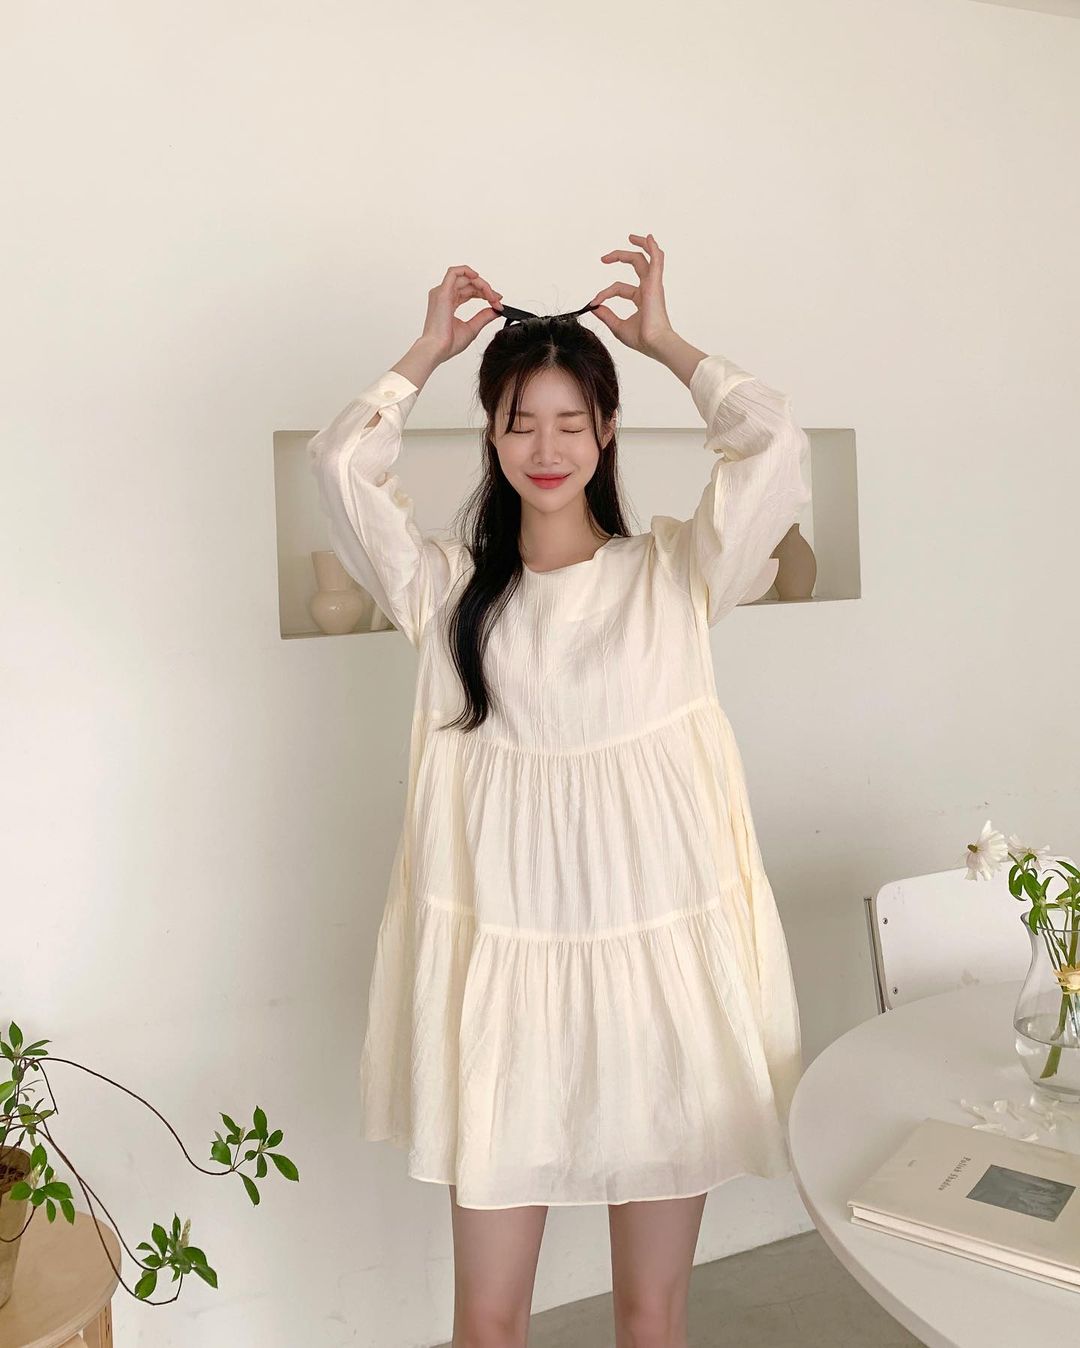 Hè đến là gái Hàn lại diện đủ kiểu váy trắng siêu trẻ xinh và tinh tế, xem mà muốn sắm cả 'lố' về nhà - Ảnh 13